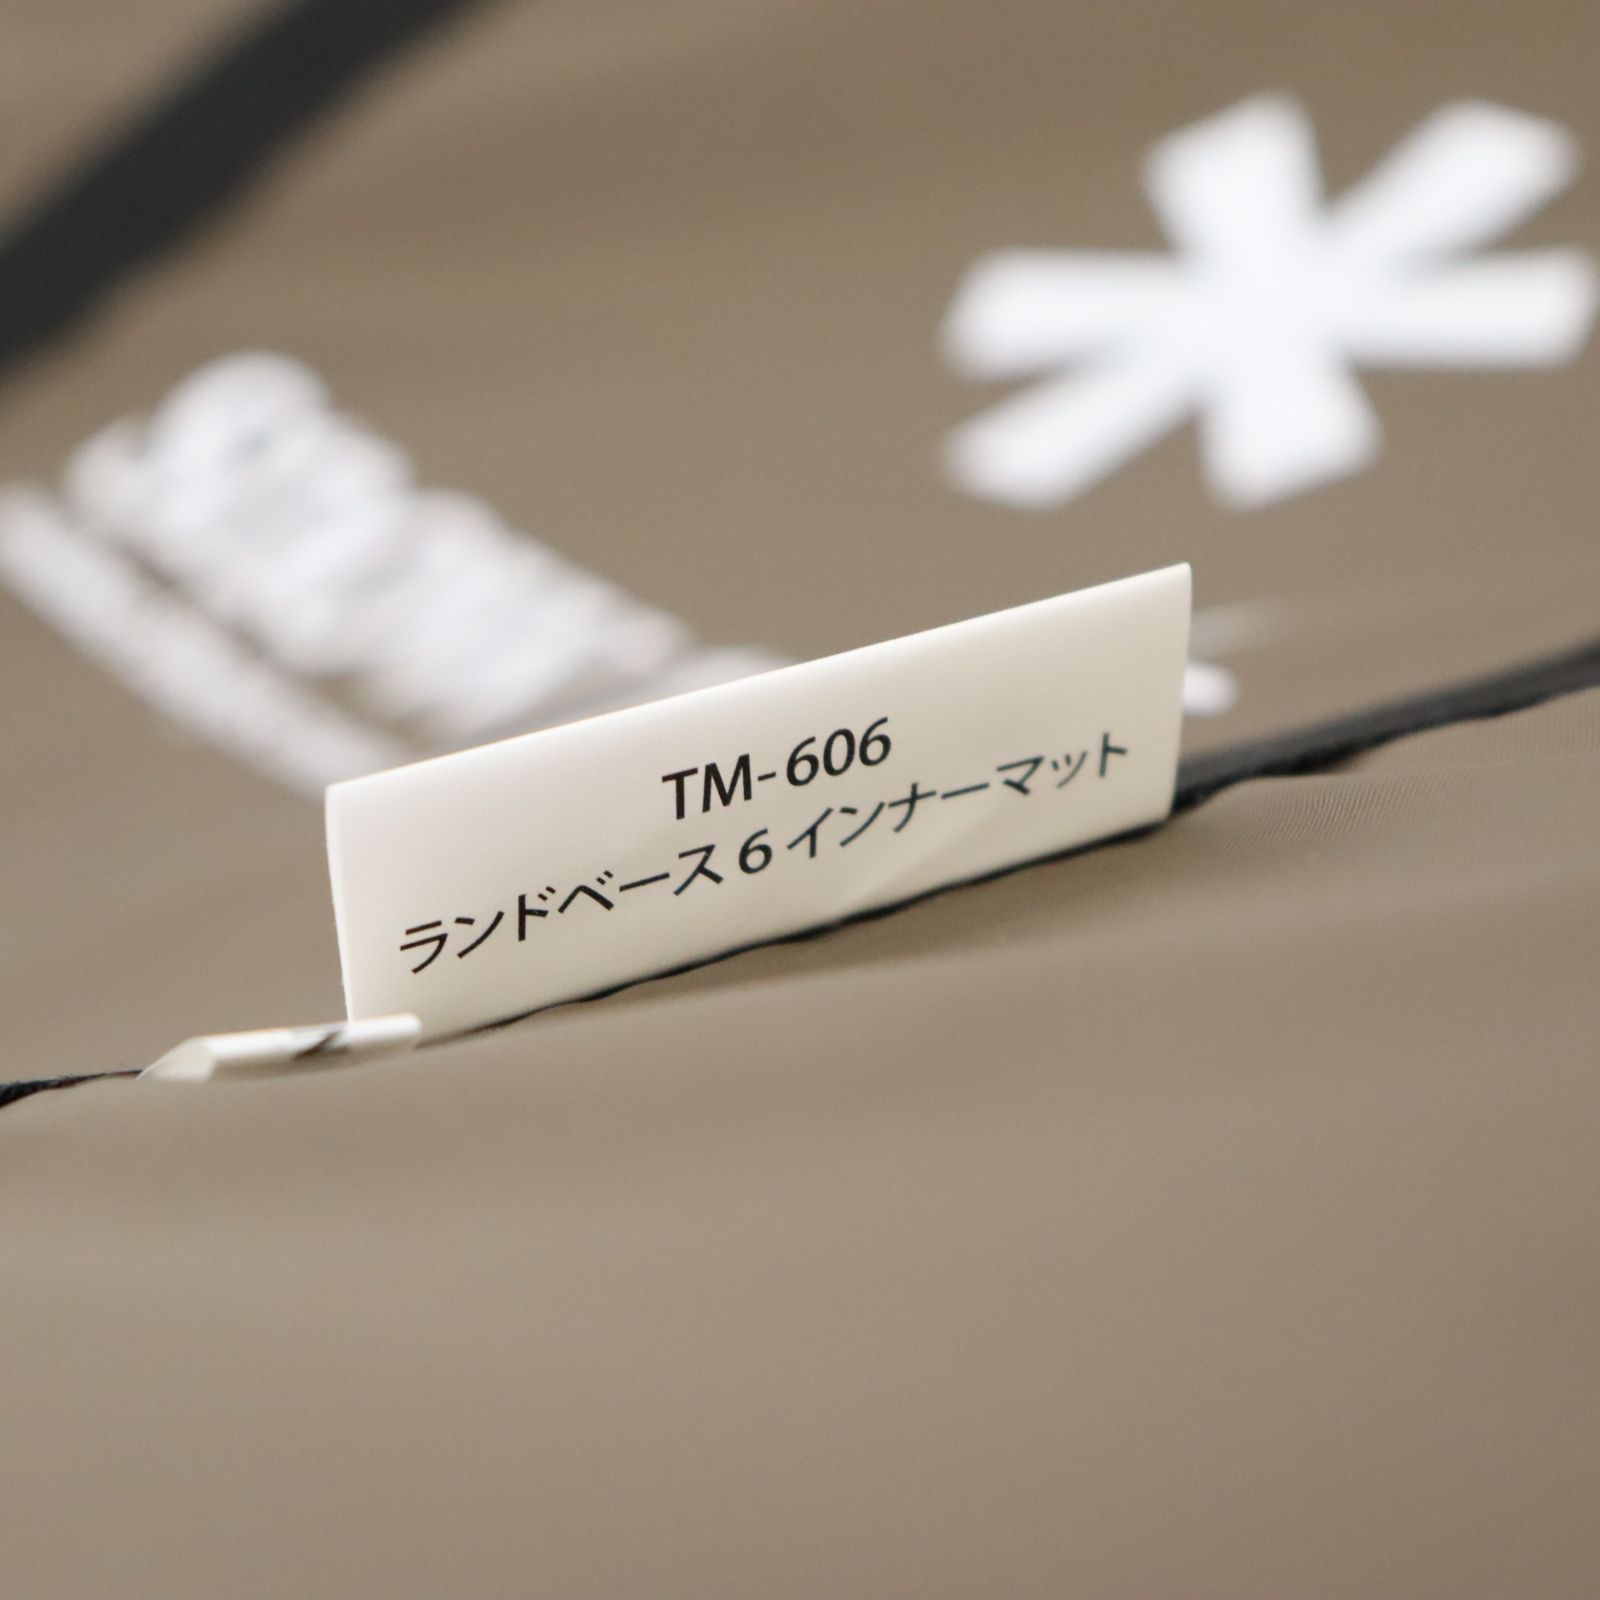 スノーピーク ランドベース6 インナーマット TM-606 【認定中古品 